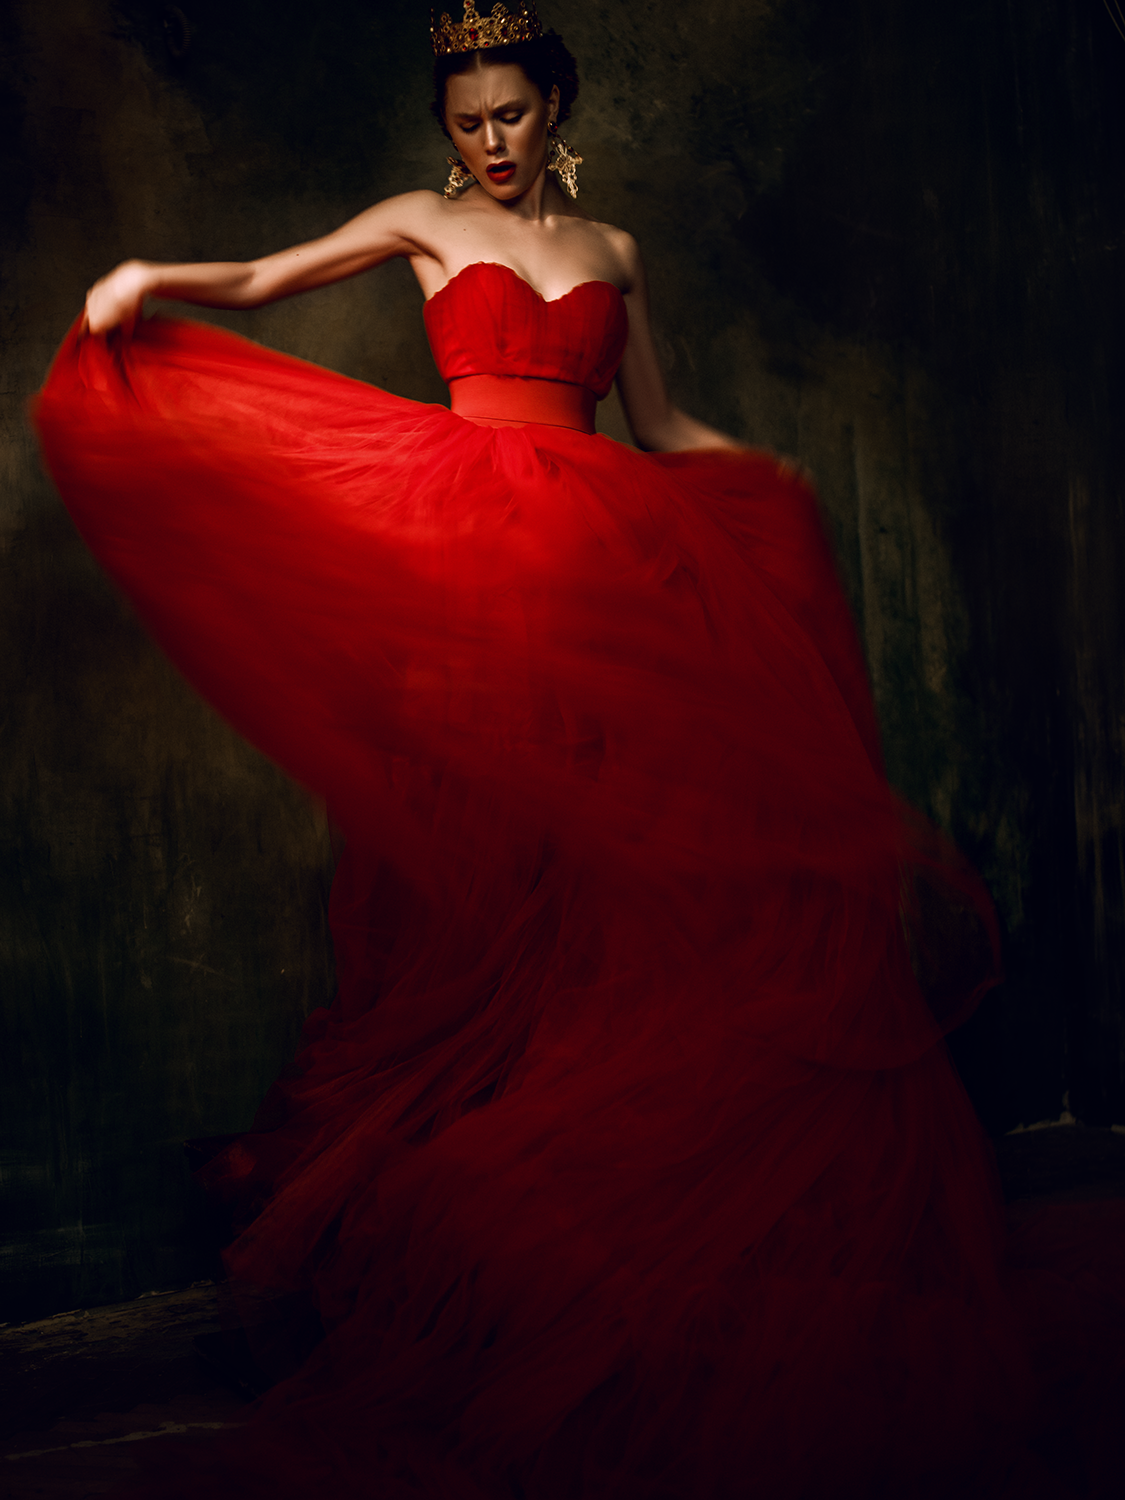 Фото девушки в красном платье. Дениз Байсал в Красном платье. Красивое красное платье. Девушка в Красном. Девушка в платье красивая.